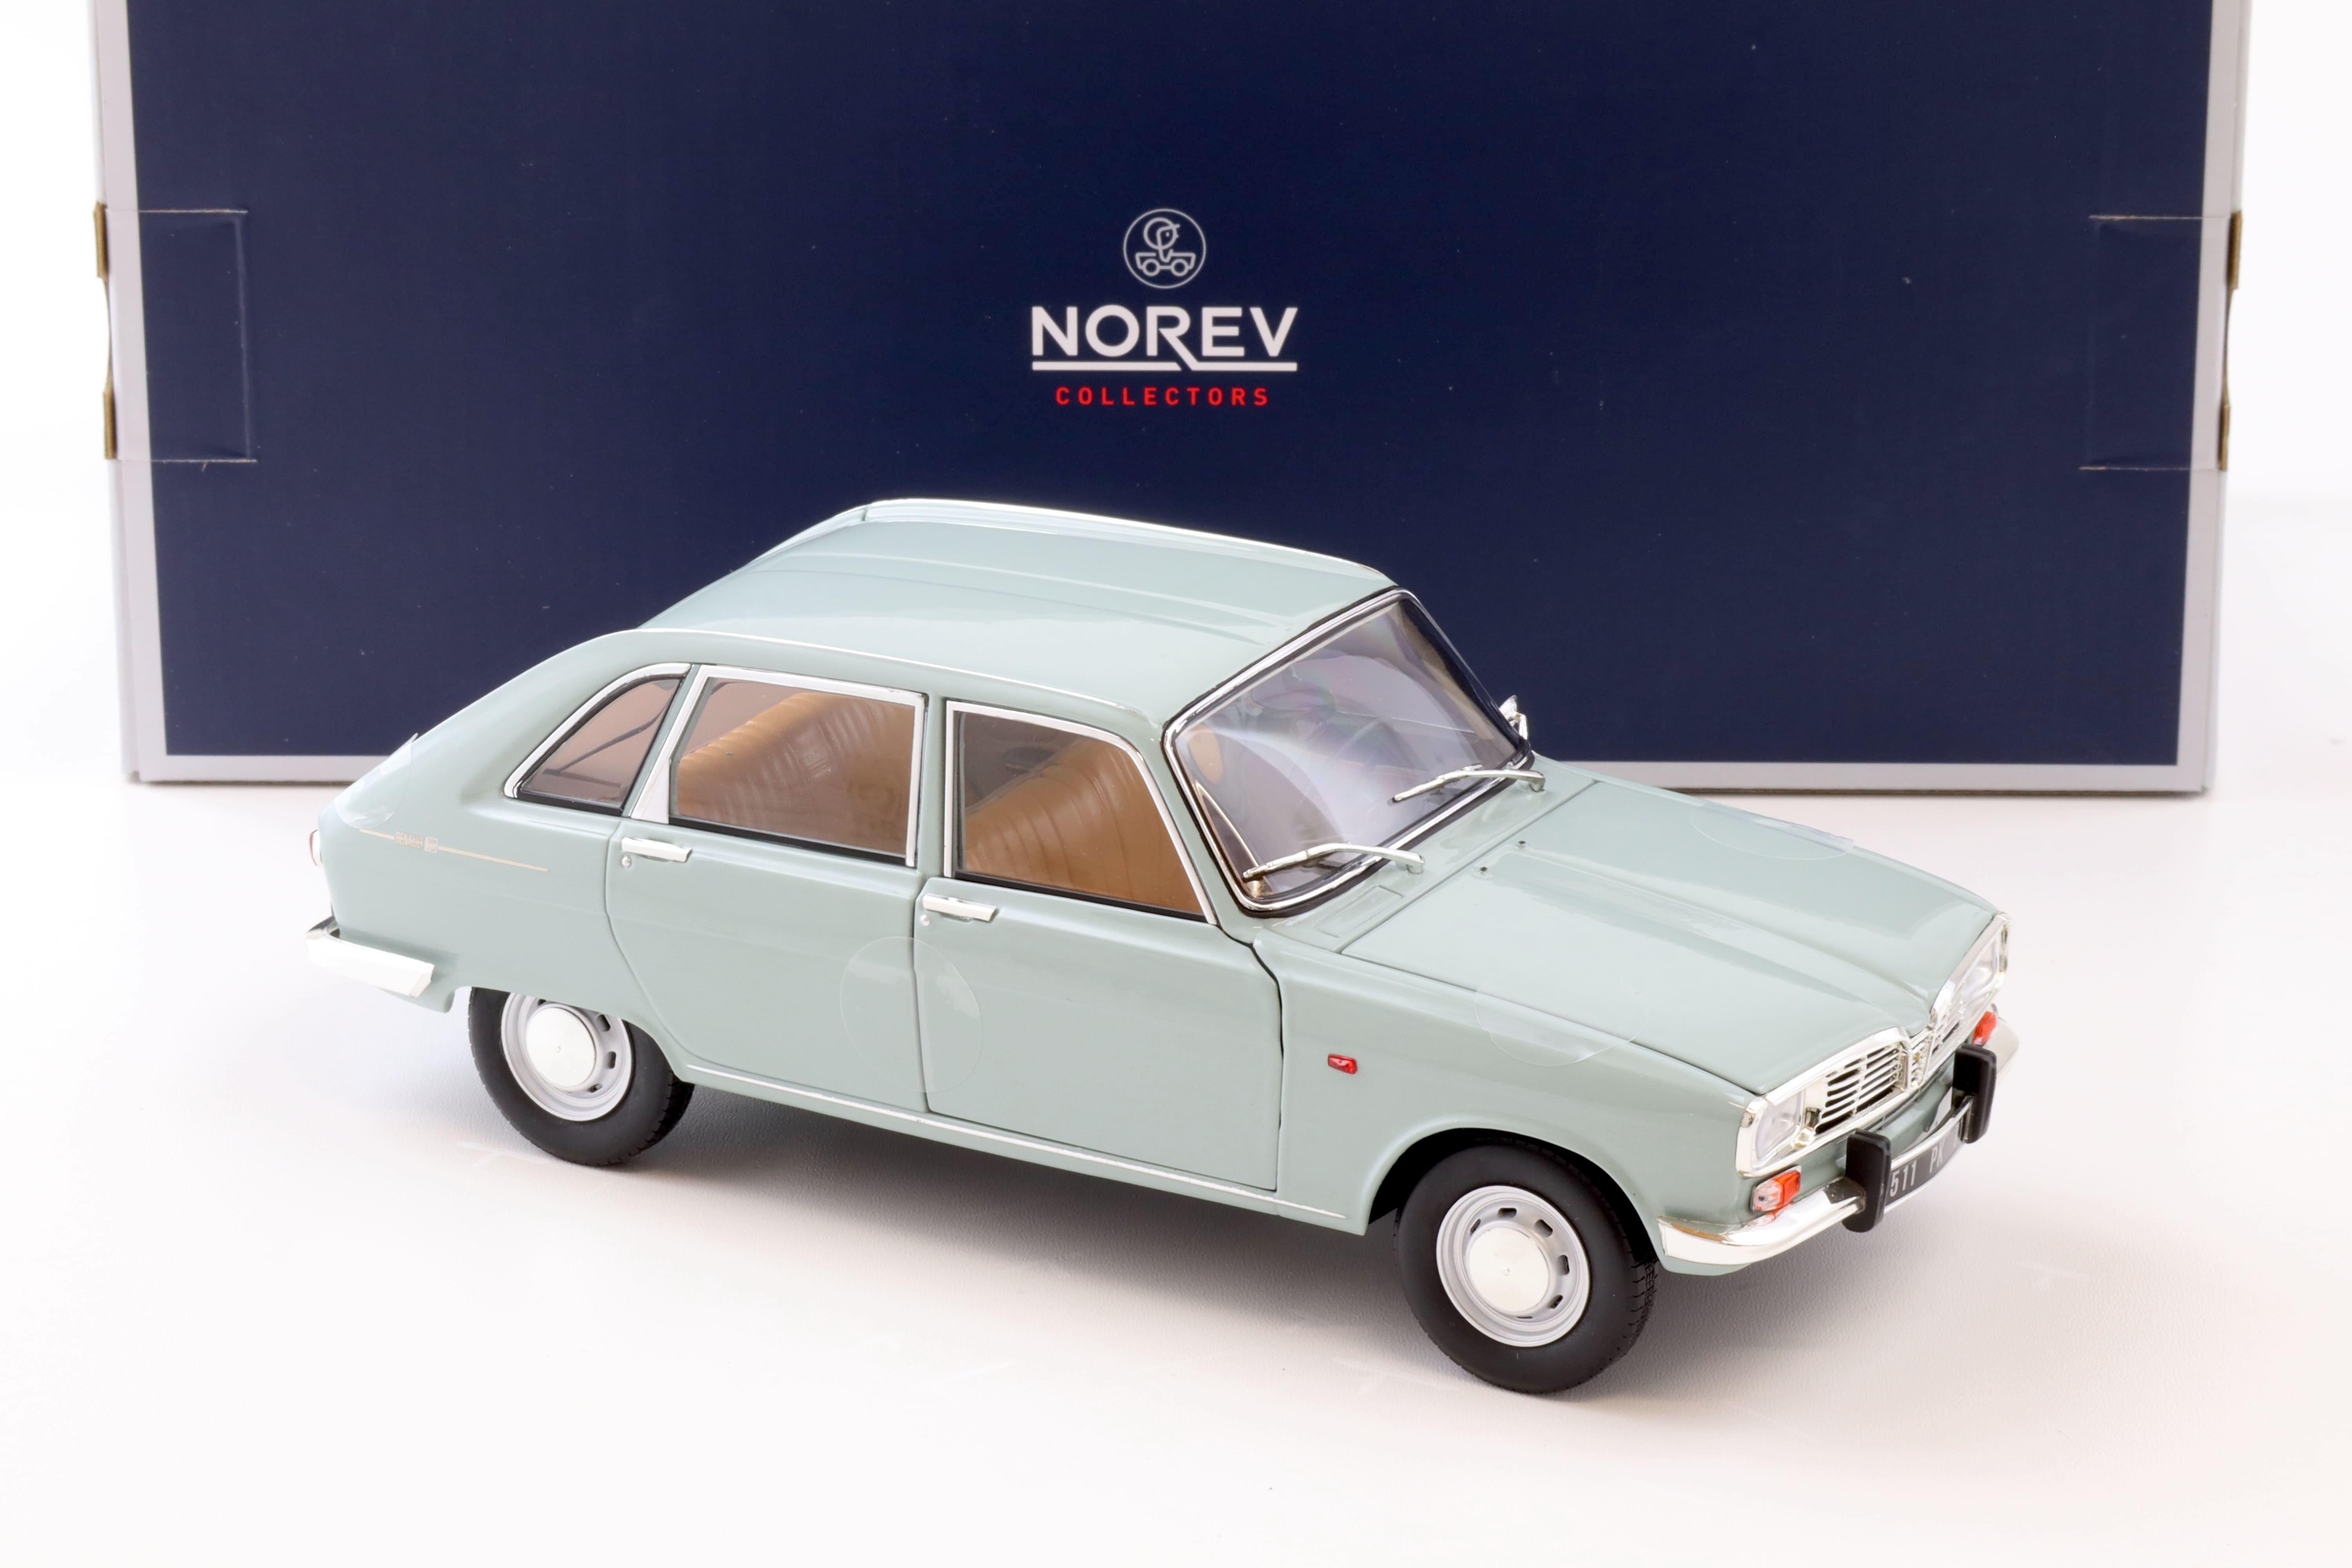 1:18 Norev Renault 16 light blue 1968